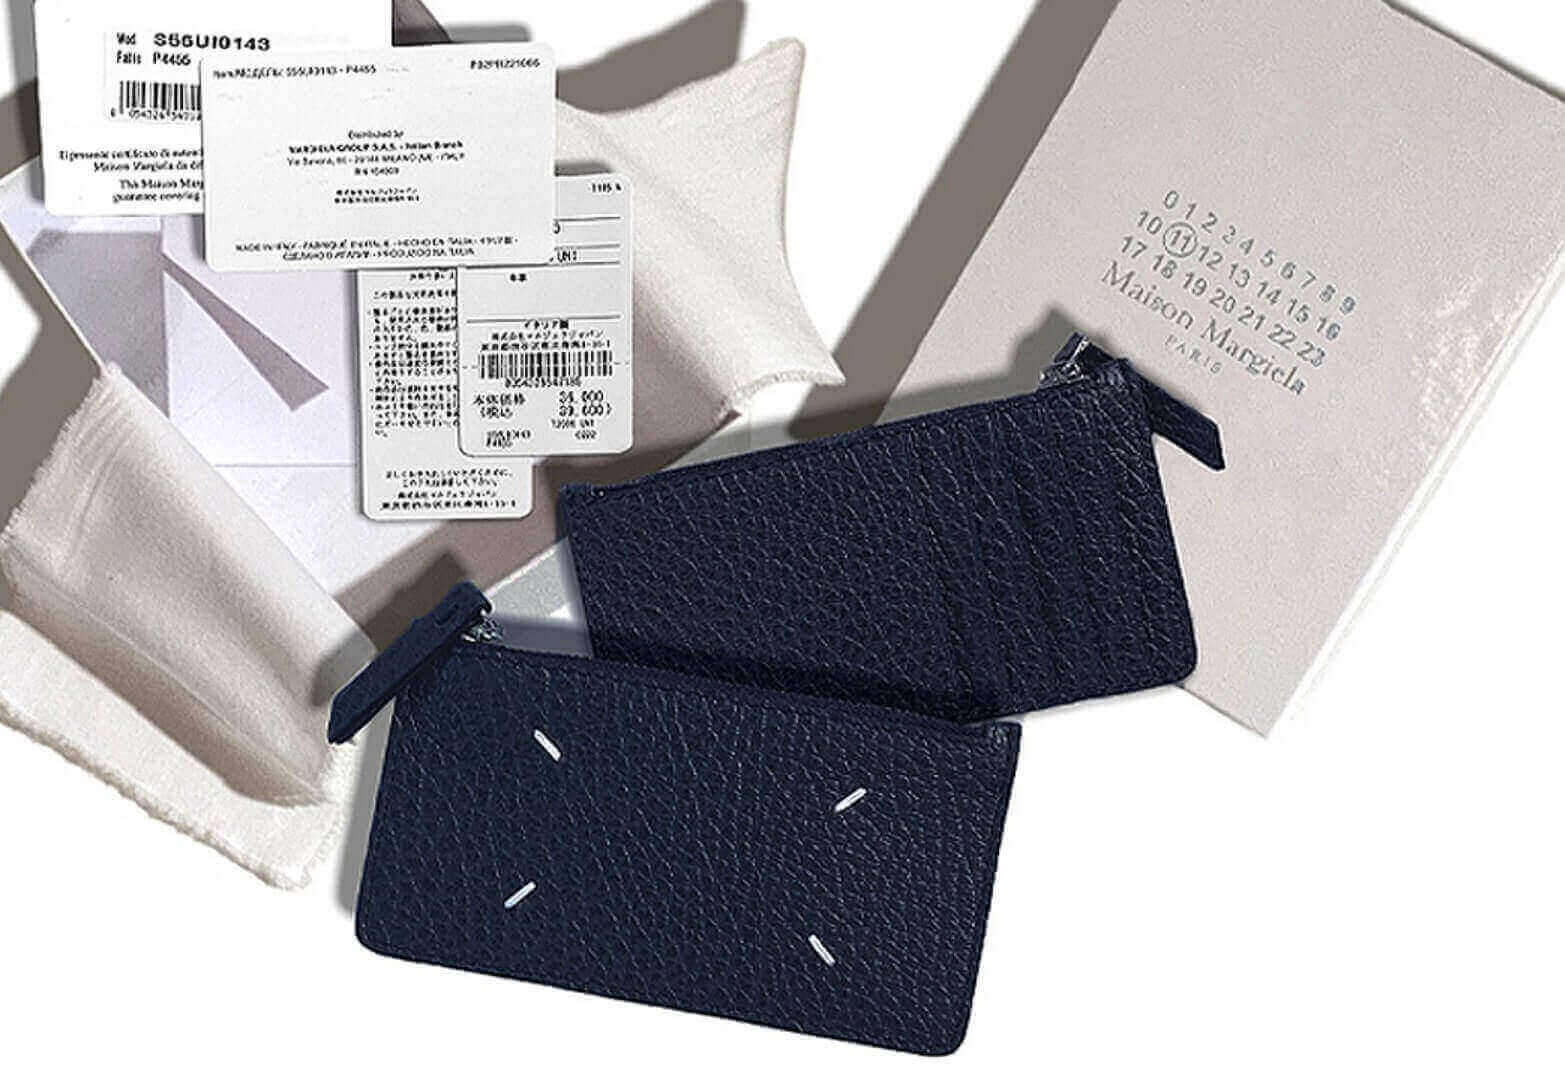 メゾンマルジェラの財布とギャランティカード、ボックス、付属の布などの付属品